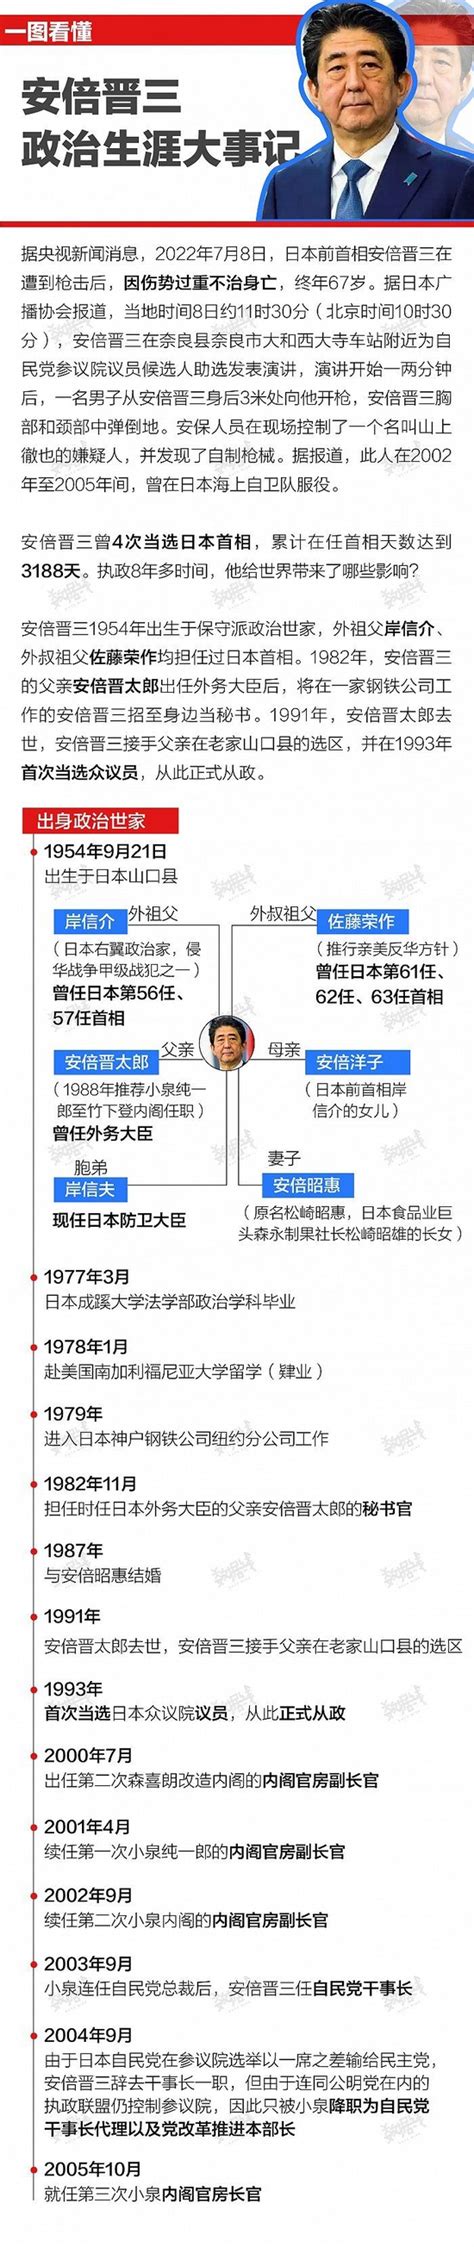 安倍晋三赴里约出席奥运闭幕式 欲宣传东京奥运_手机凤凰网